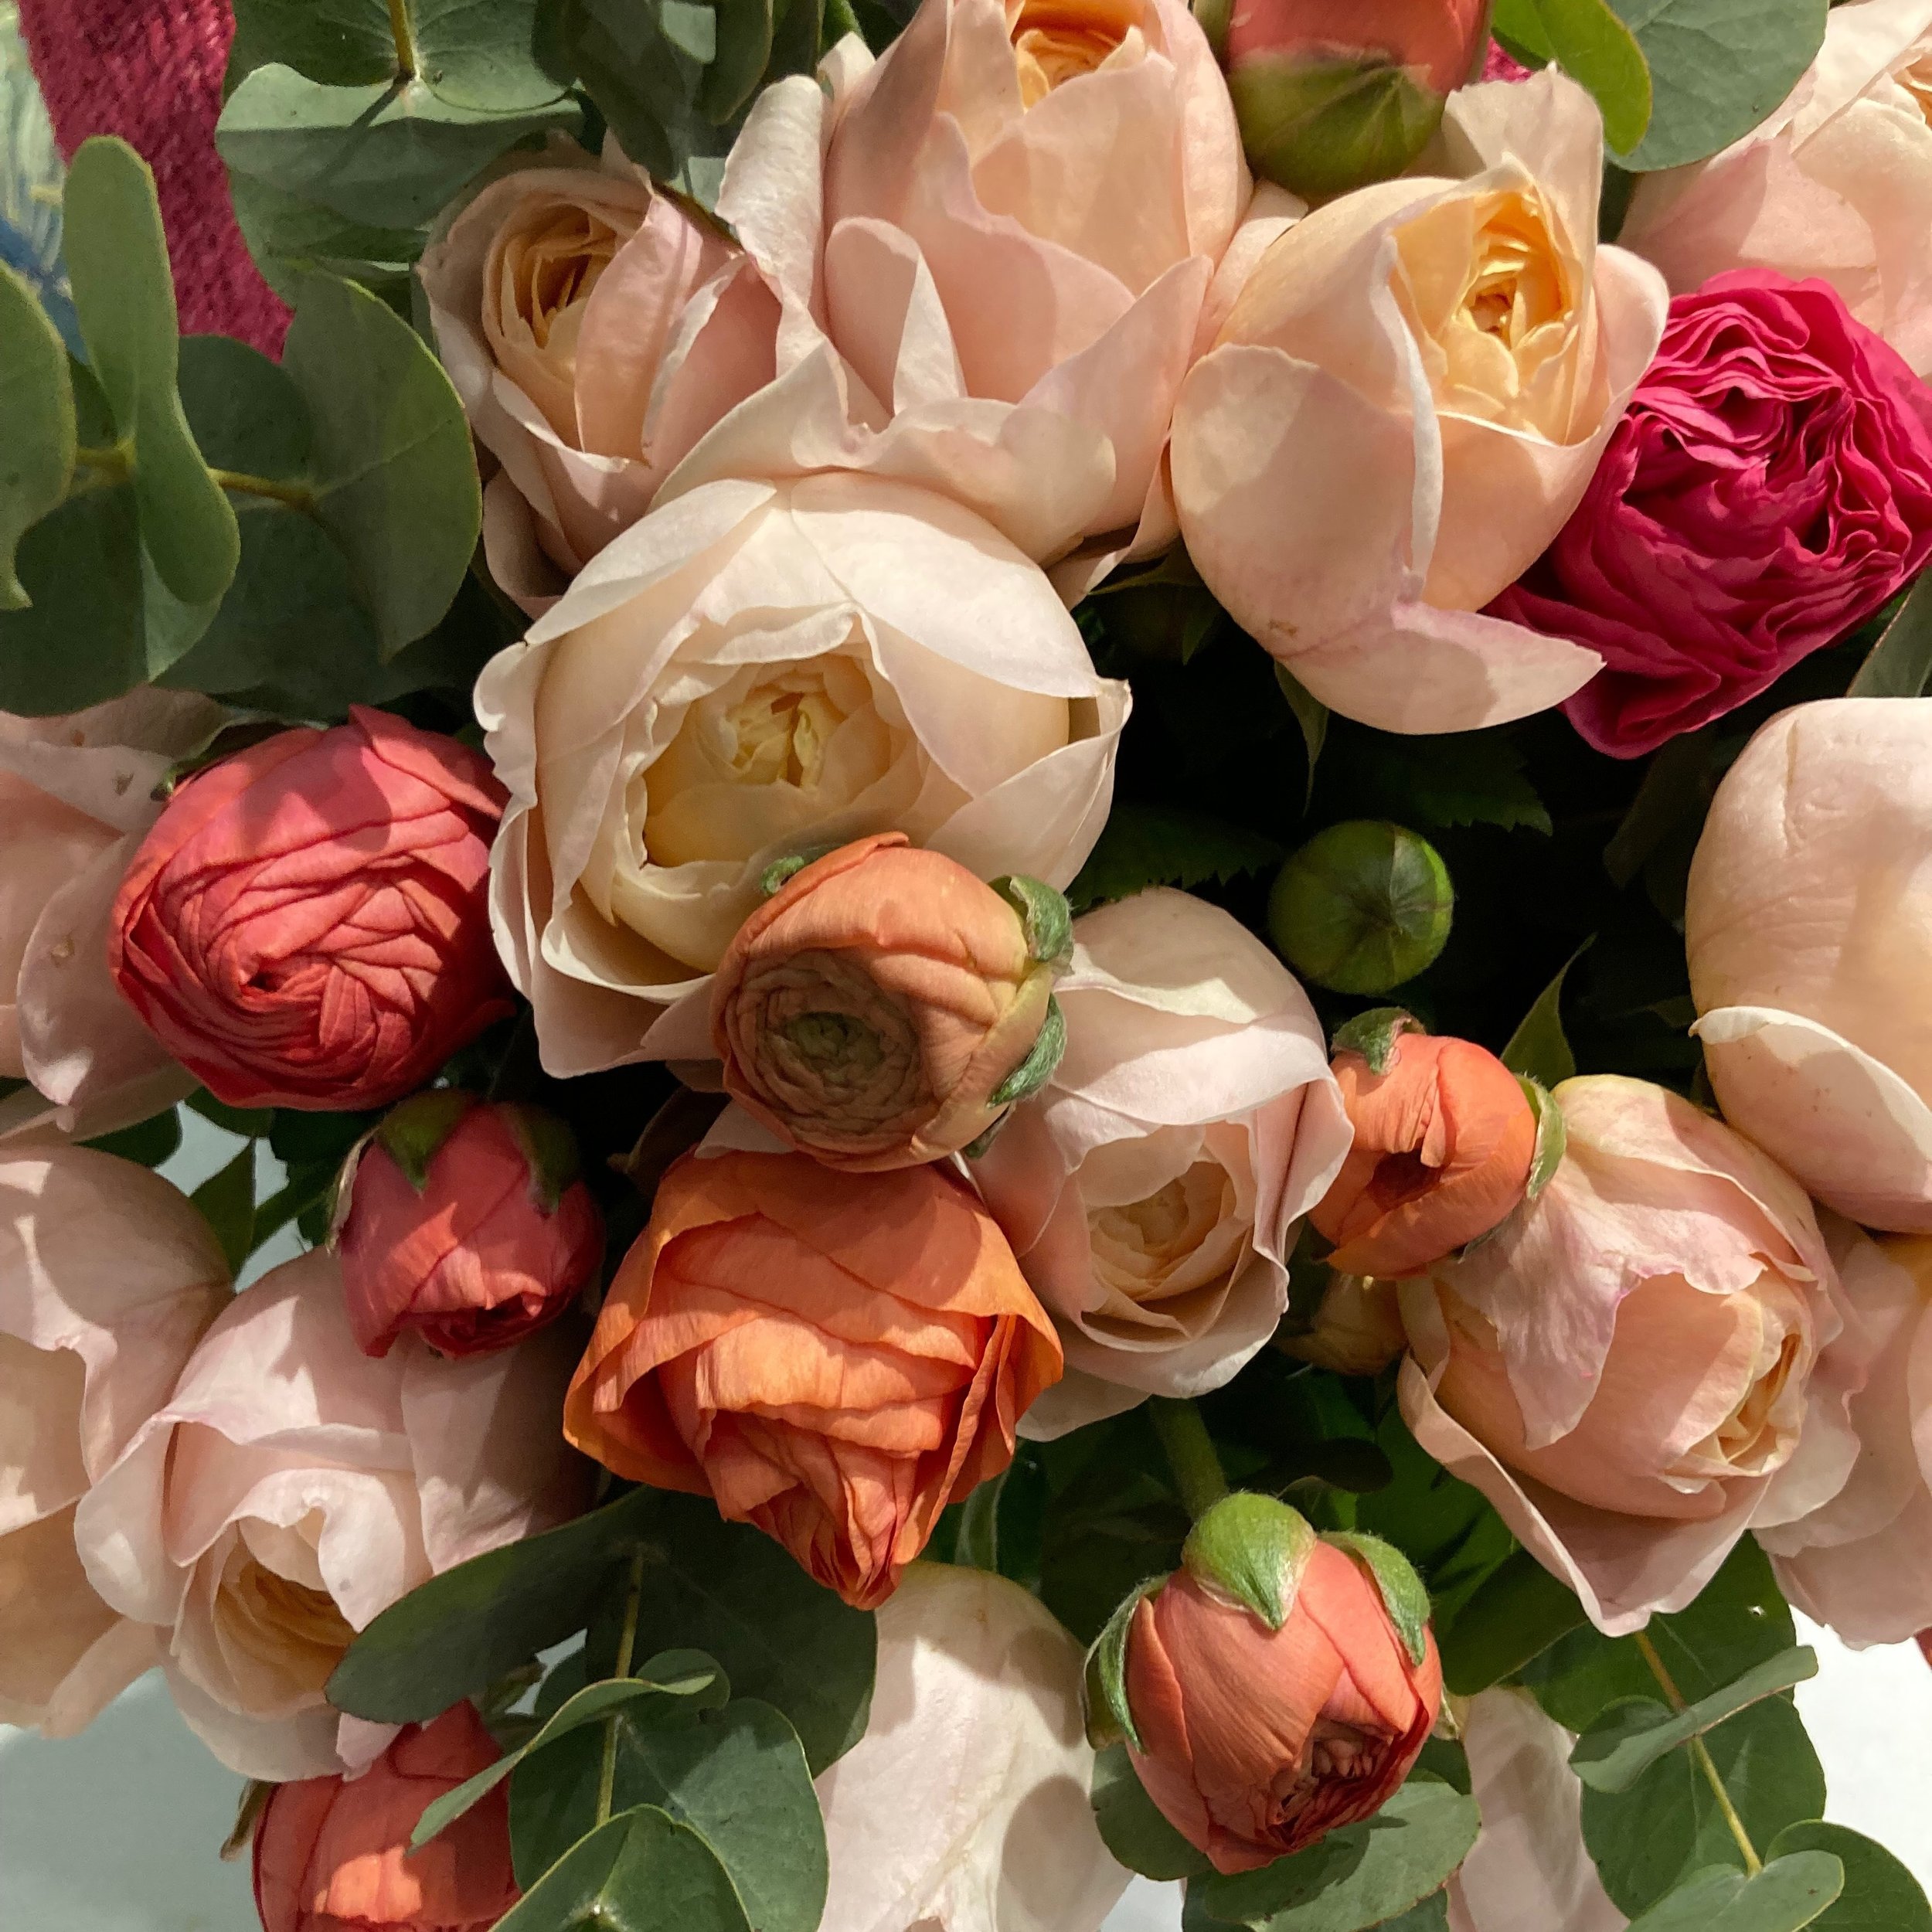 Magnifiques roses madame gulya avec ses renoncules 💐 #fleurs #bouquet #renoncule #rose